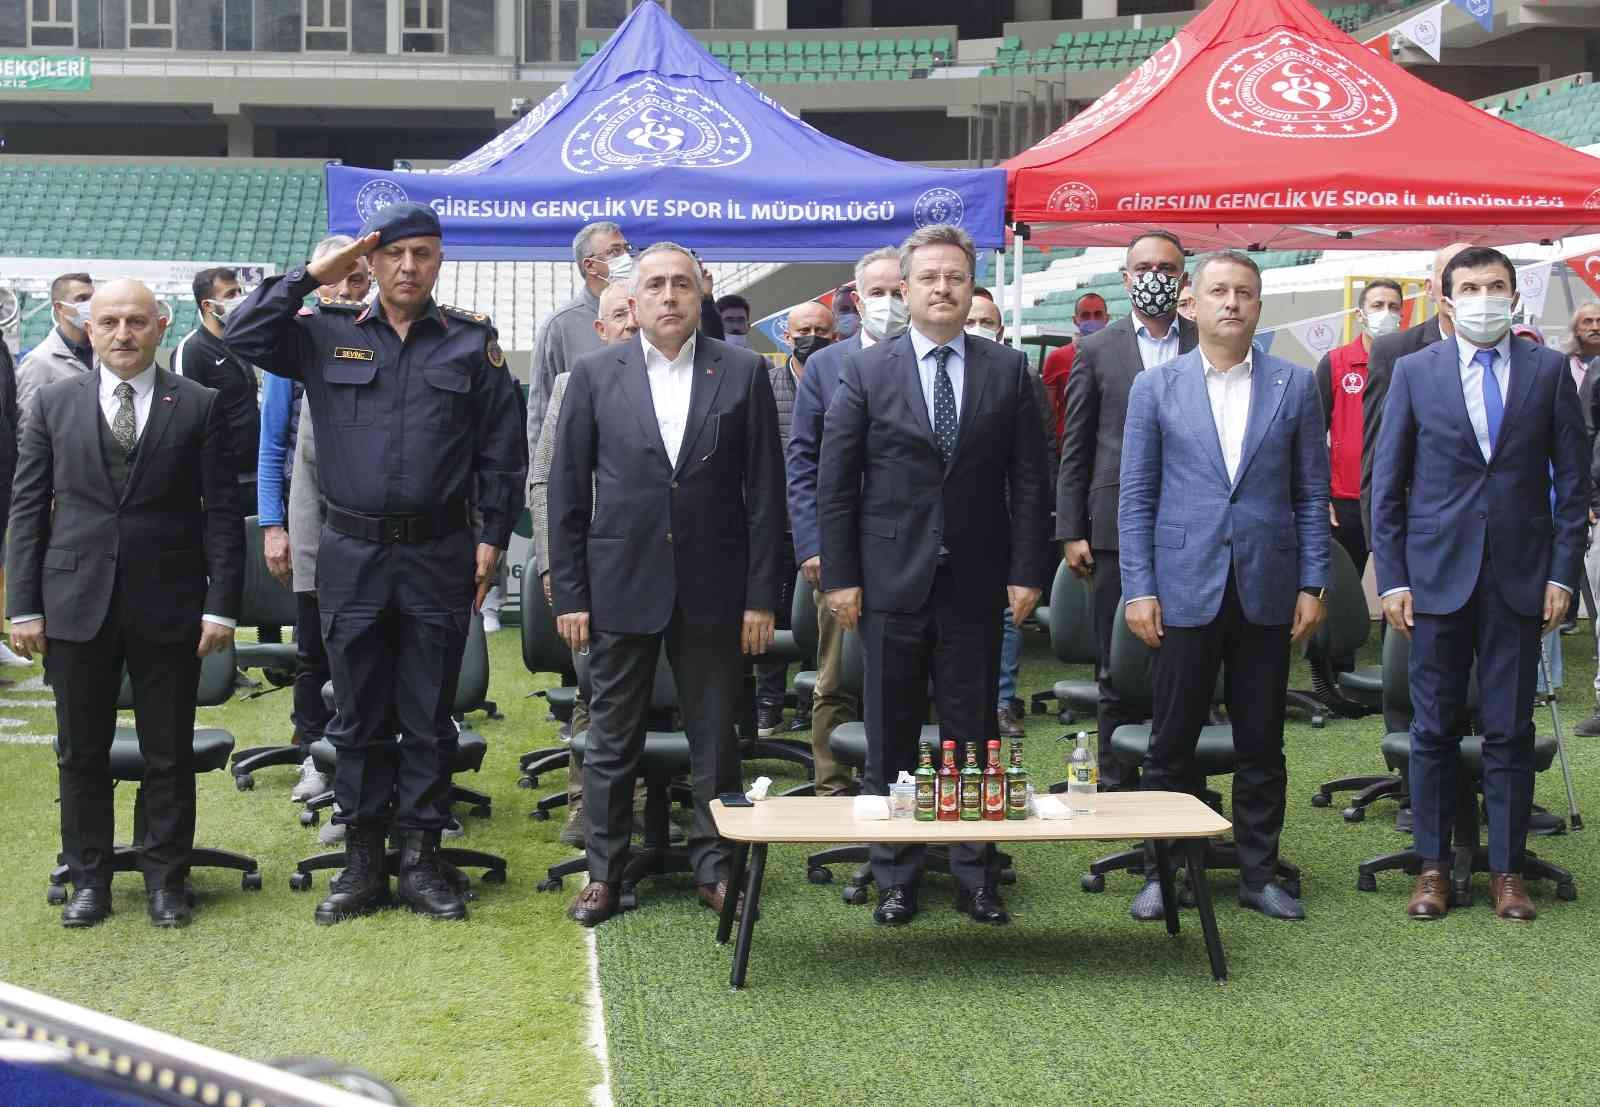 Giresun’da amatör spor kulüplerine malzeme yardımı yapıldı #giresun